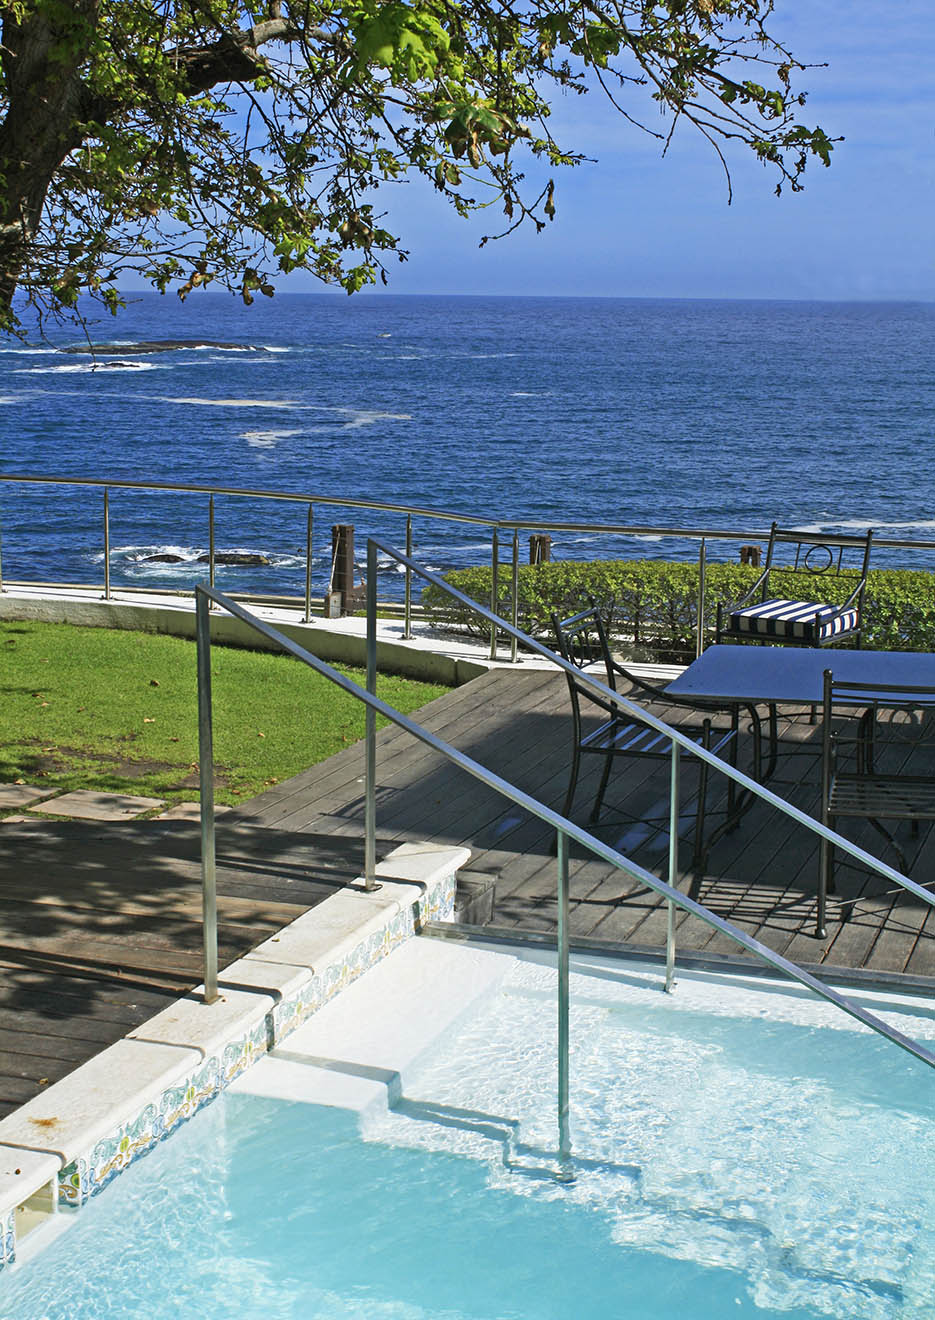 Swimming pool and ocean views at Twelve Apostles Hotel